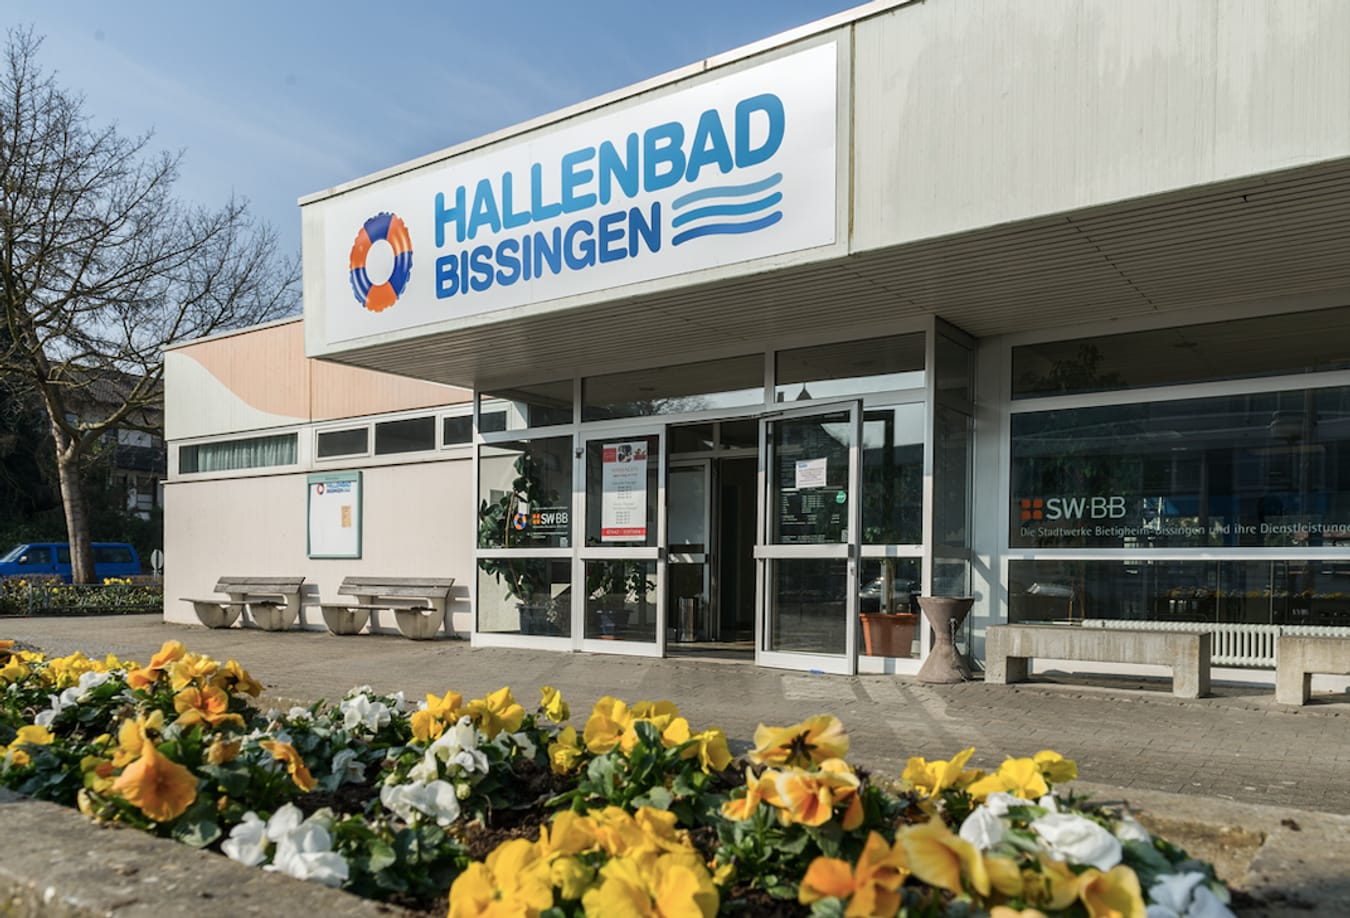 Hallenbad Bissingen - online Ticketing ab 1.4. vorübergehend nicht möglich 